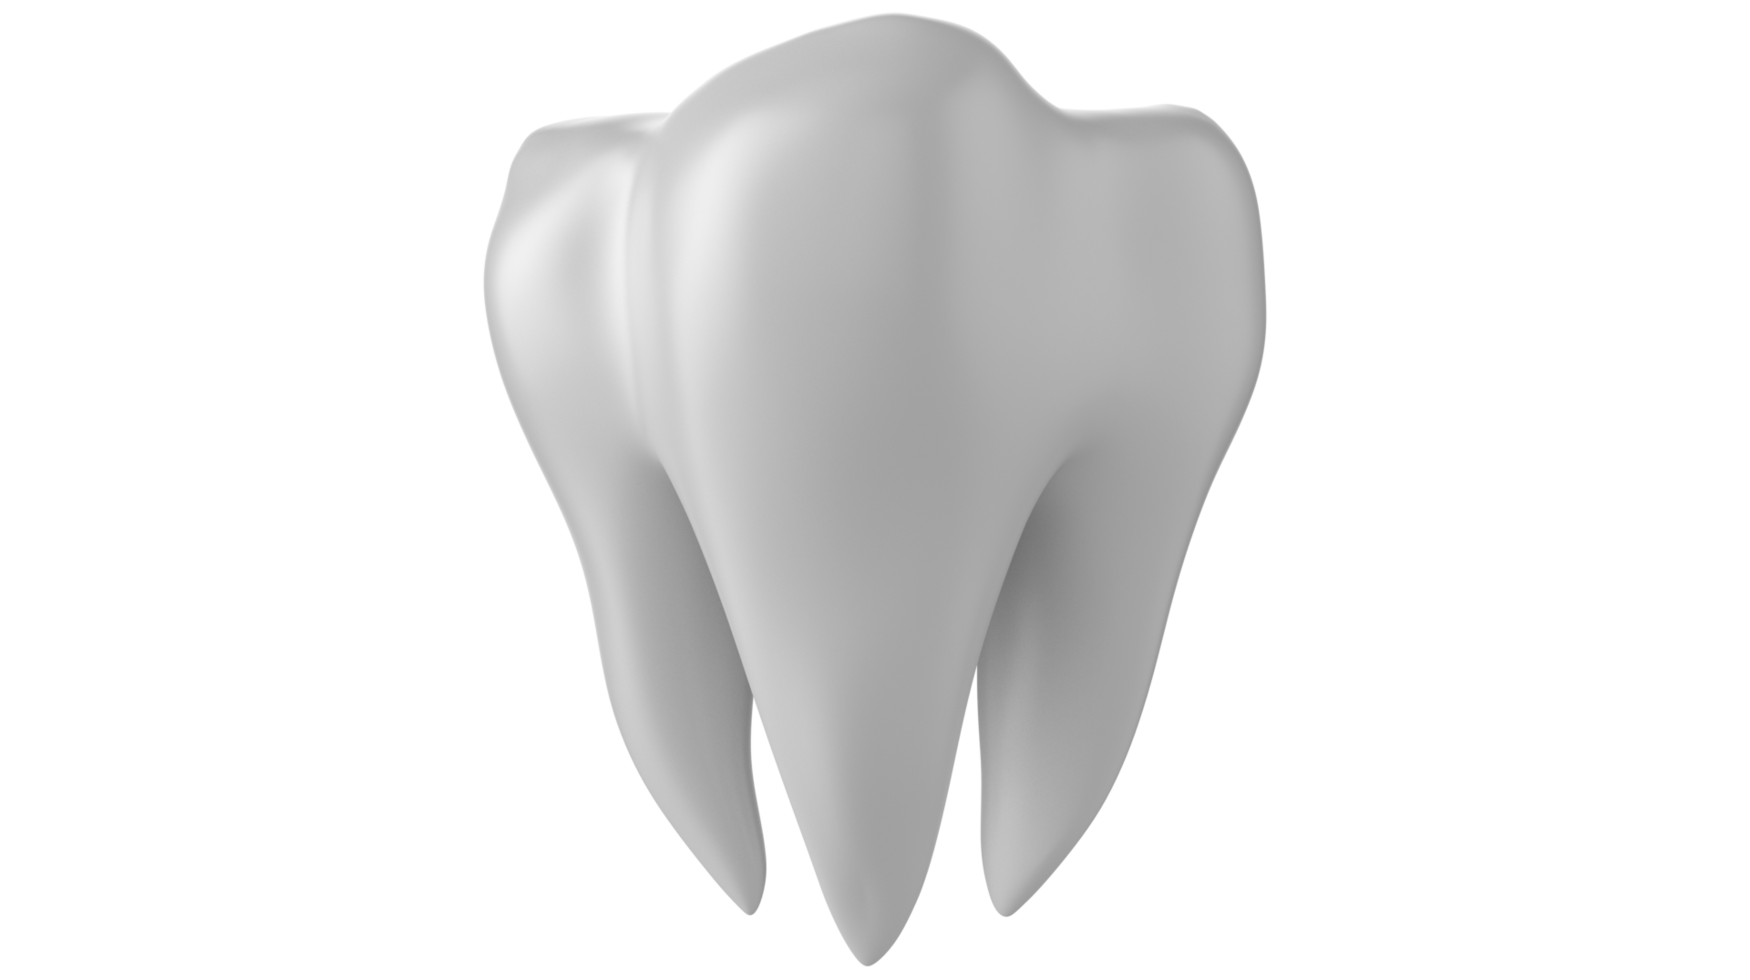 Dentes dentais 3d isolados em fundo transparente png